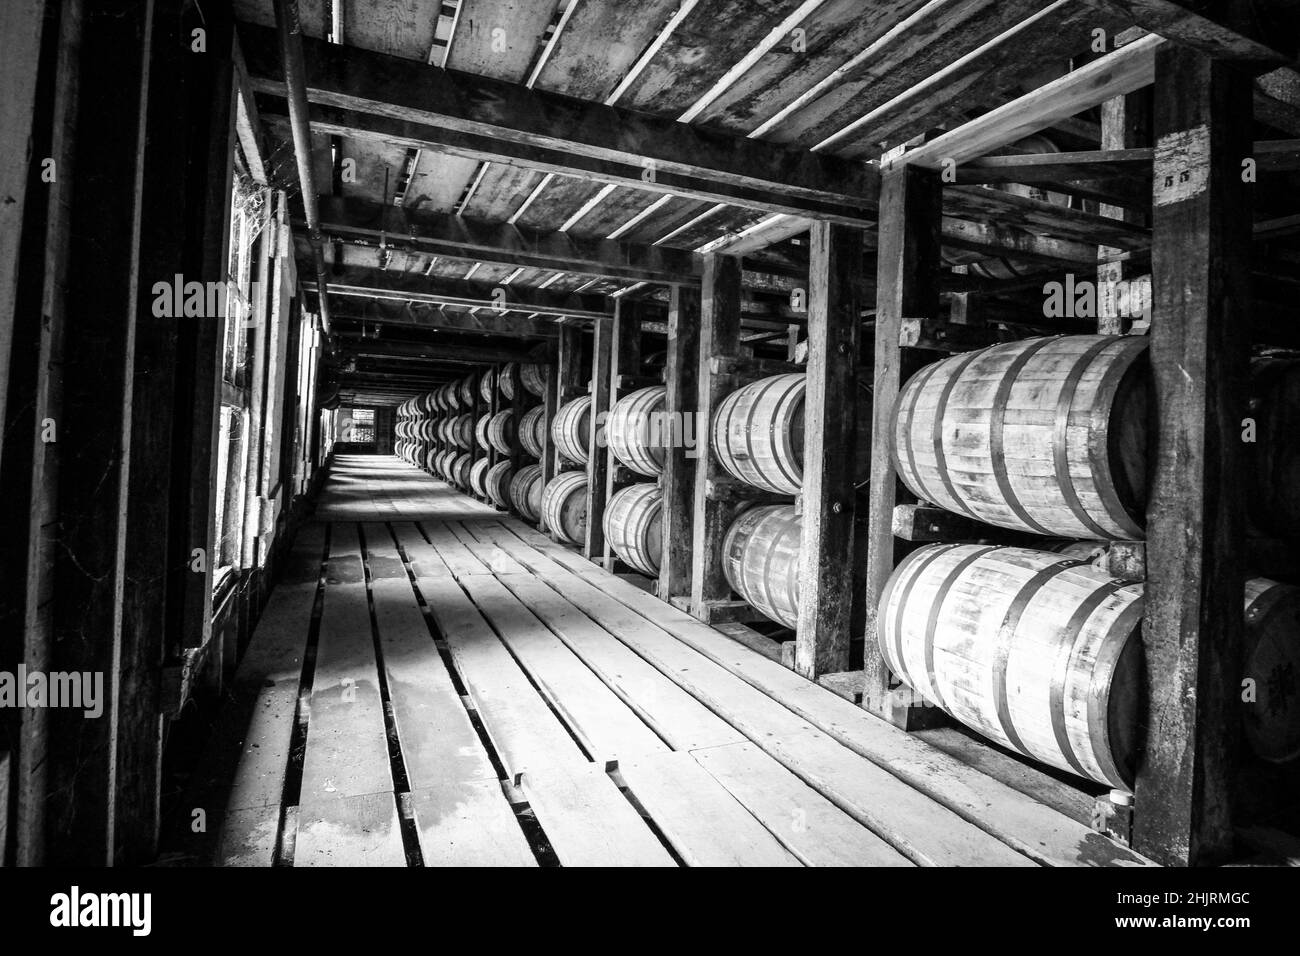 Visite d'une distillerie de bourbon rick House.En regardant dans l'allée toutes les rangées de barils de vieillissement. Banque D'Images